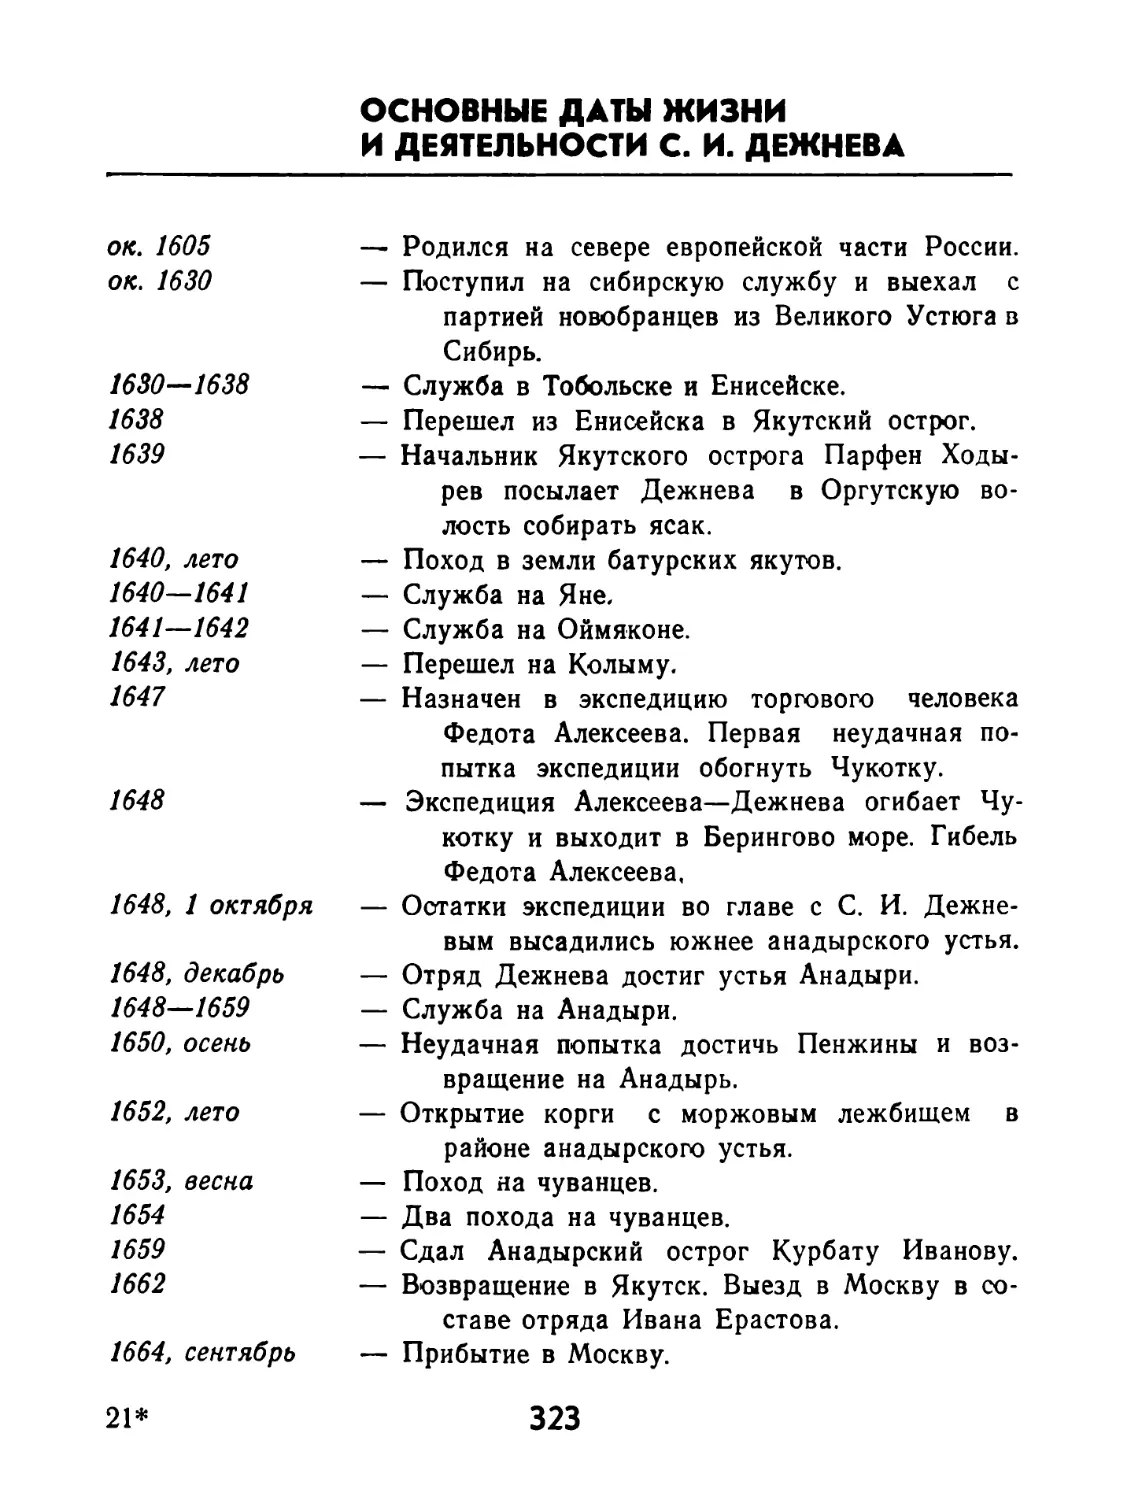 Основные даты жизни и деятельности С. И. Дежнева